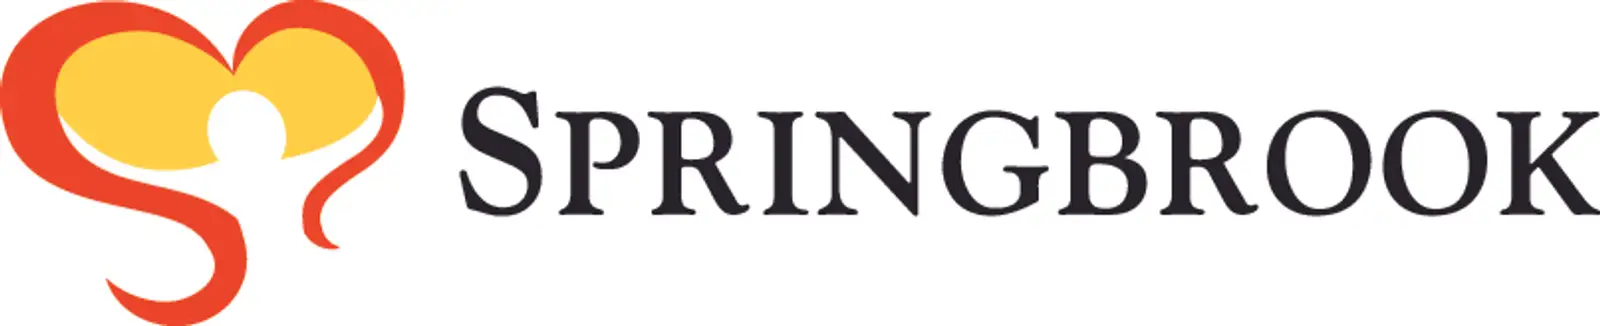 Springbrook logo